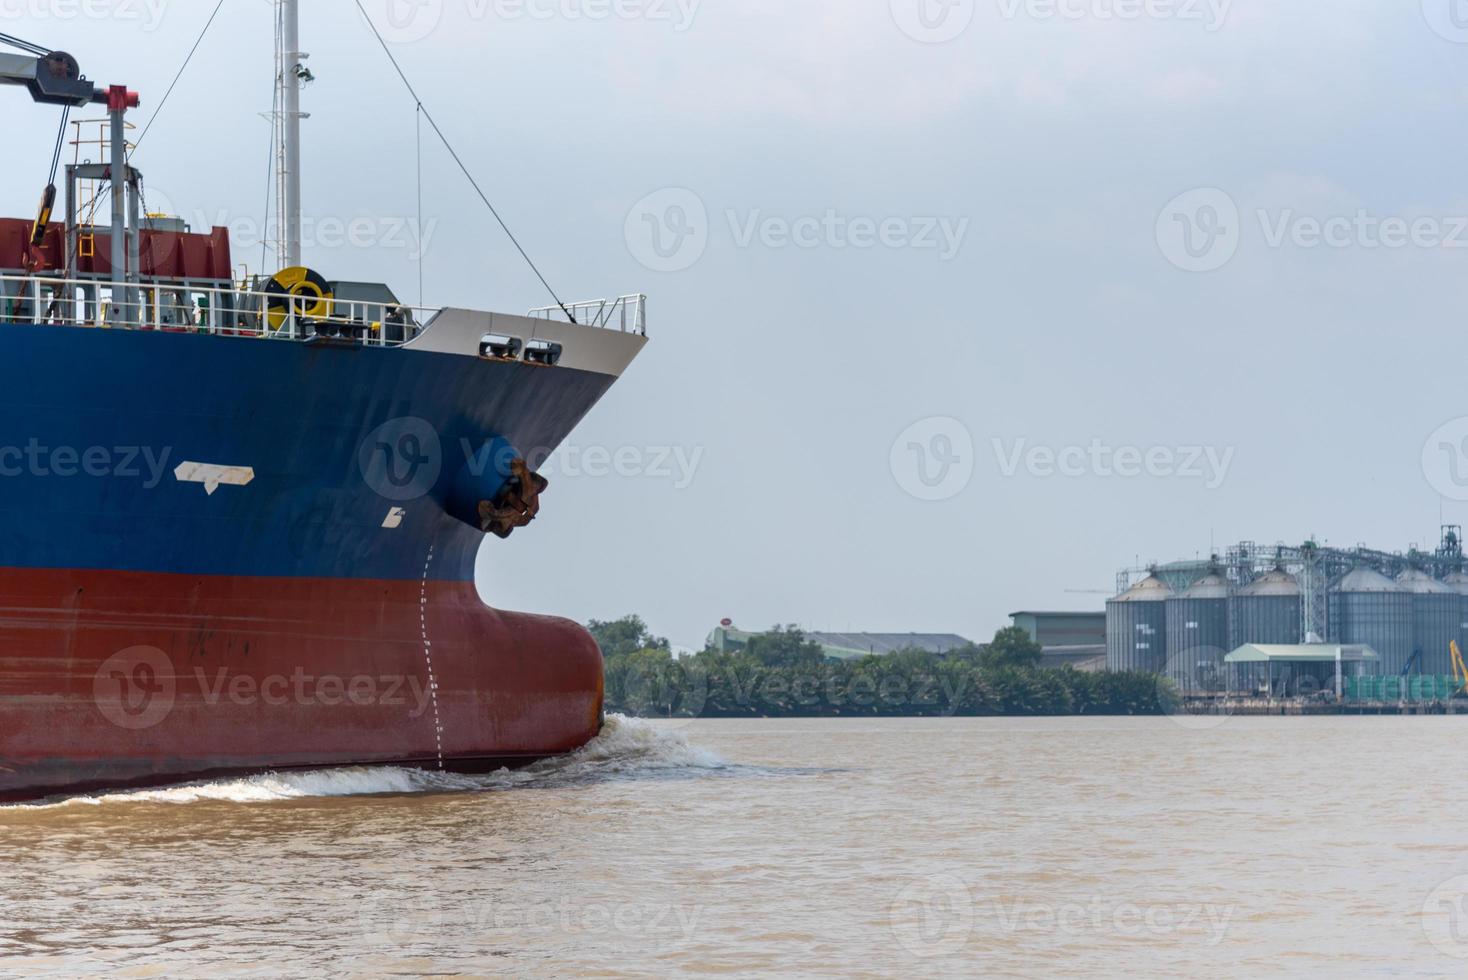 transporte de mercancías de importación-exportación por mar en grandes buques.transporte de carga, embarcación náutica, comunicaciones globales. foto